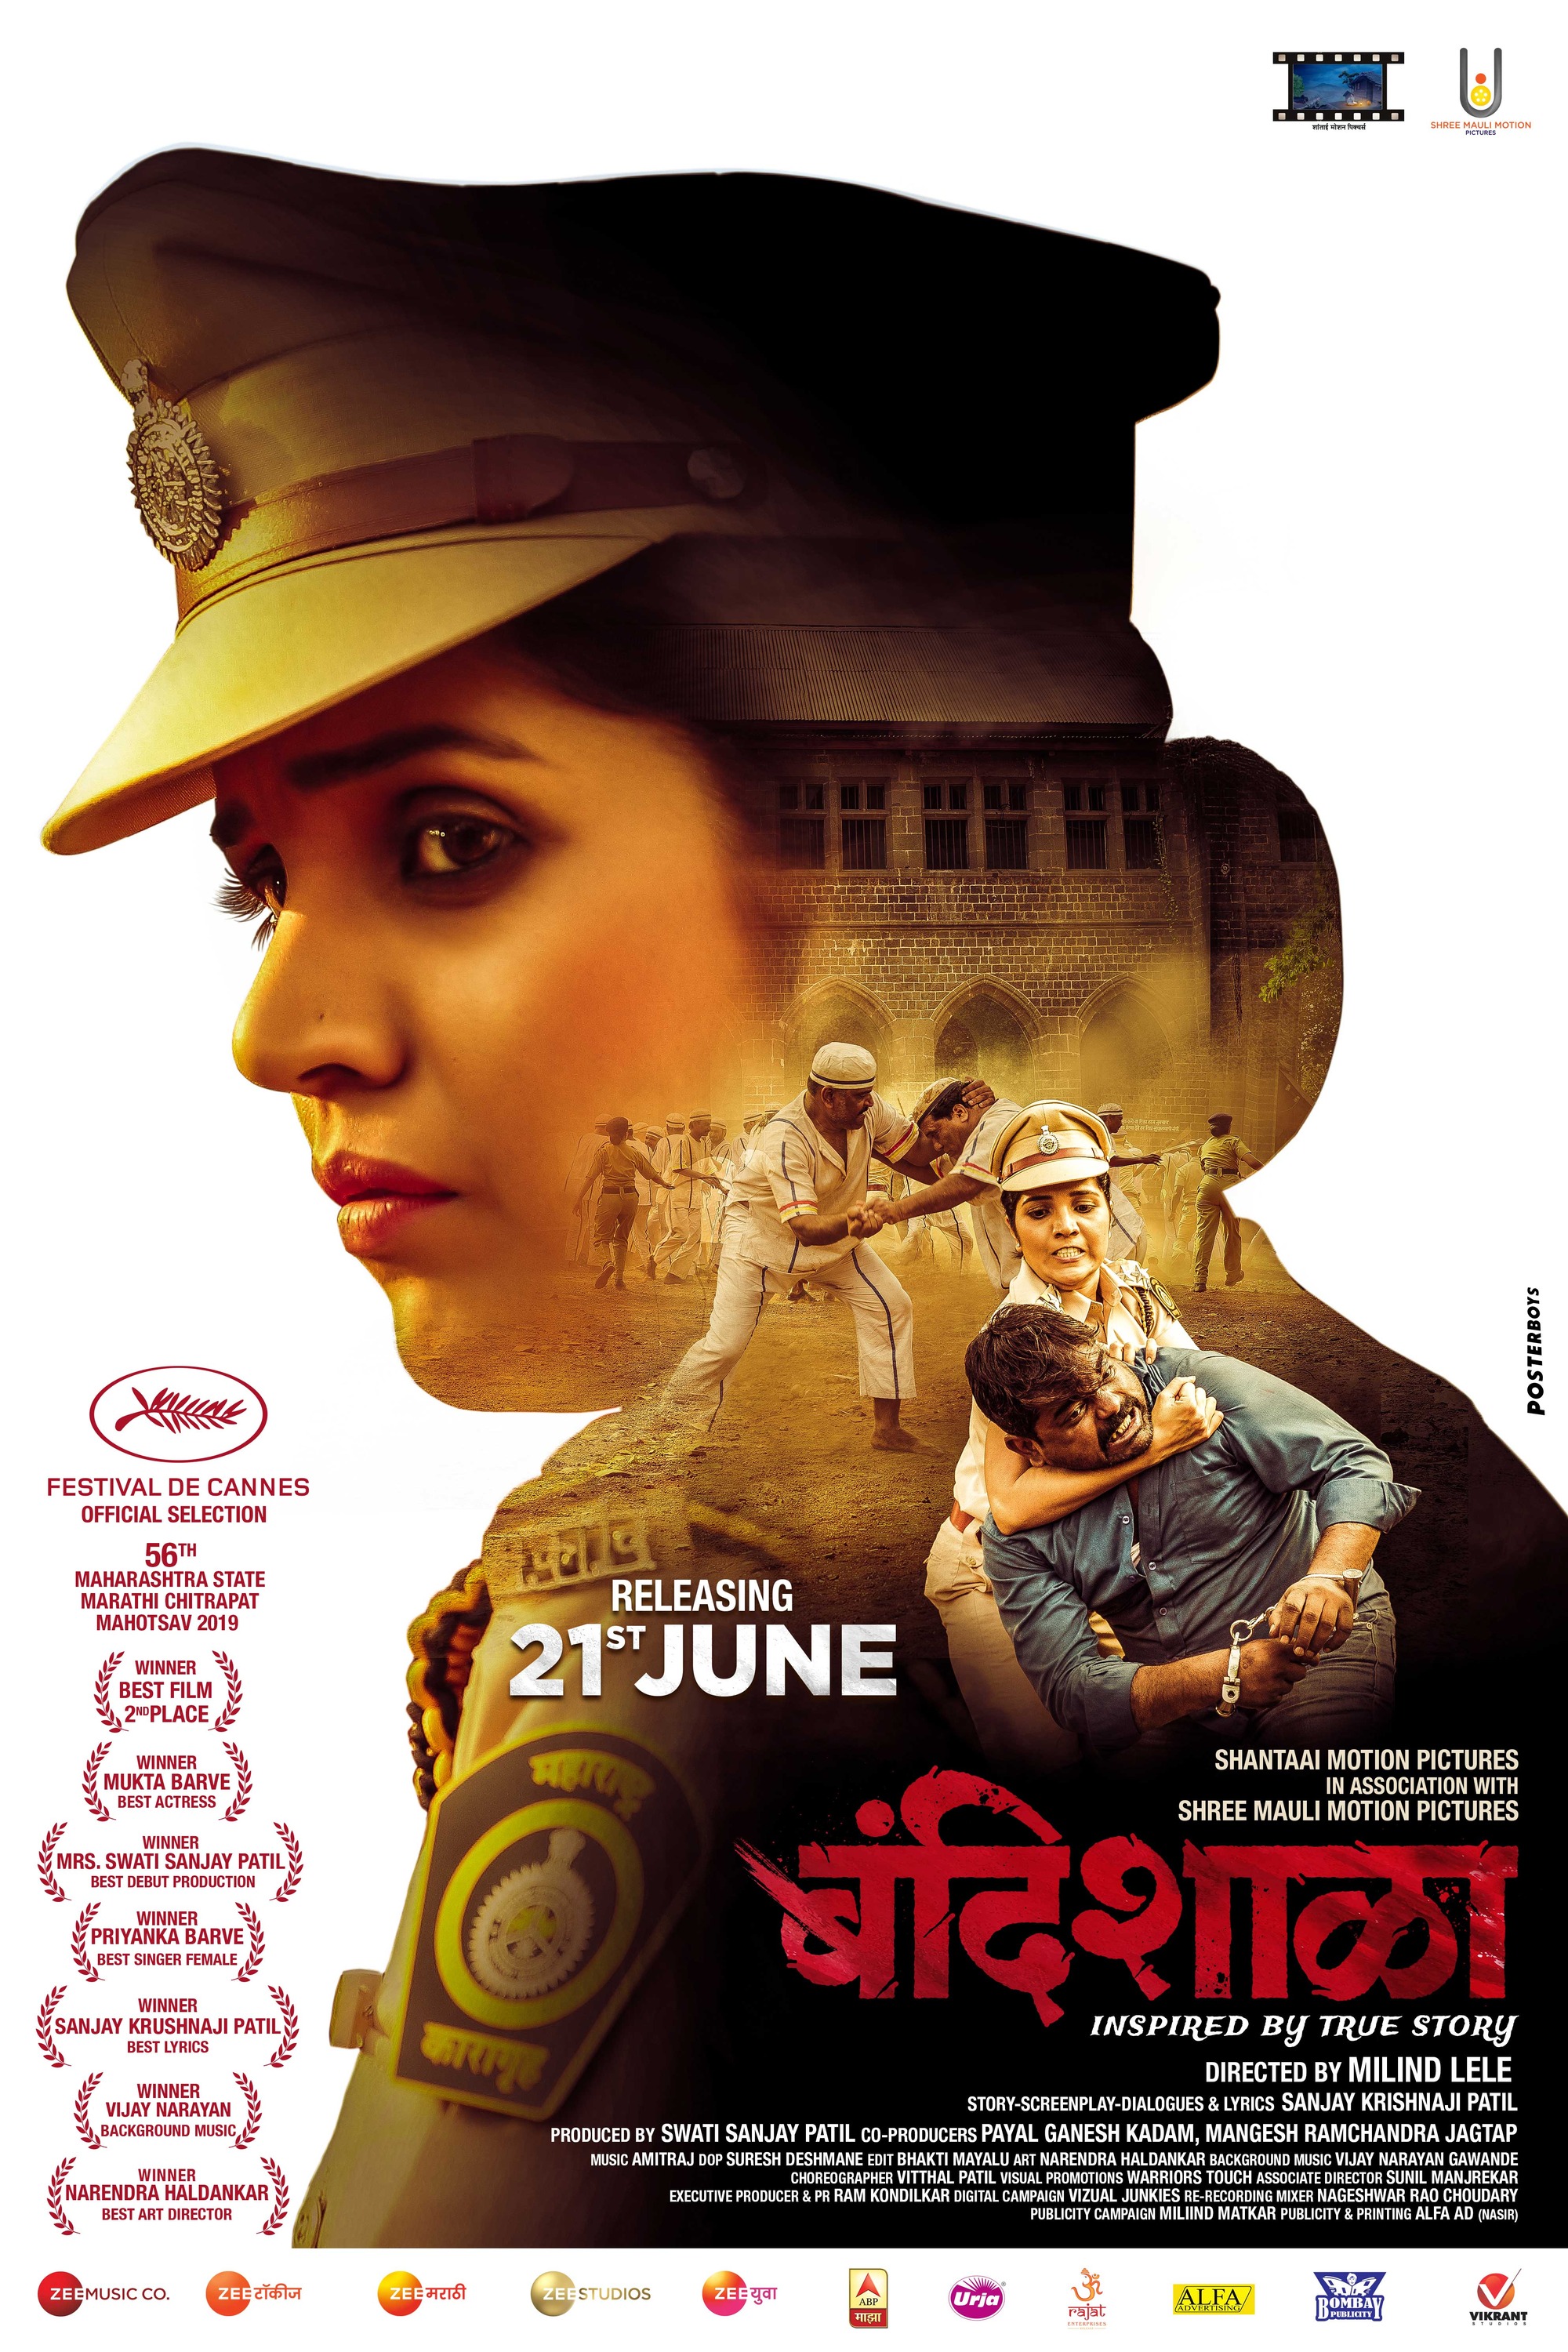 Mega Sized Movie Poster Image for Bandishala (#2 of 3)